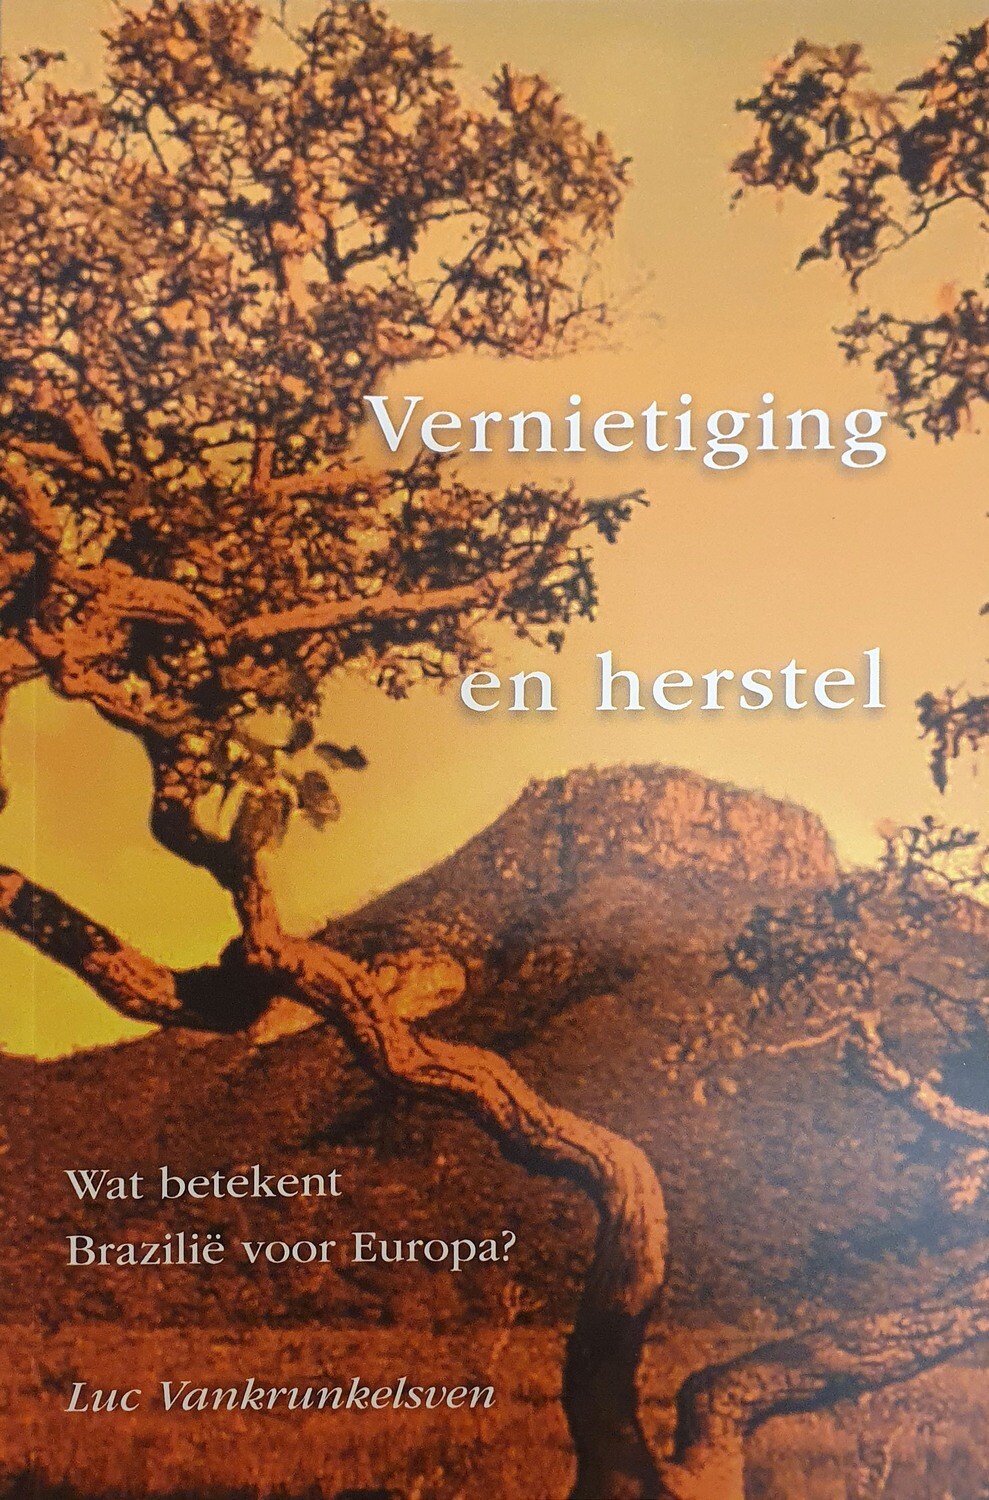 VERNIETIGING EN HERSTEL (in Dutch, Luc's latest book about the Cerrado)